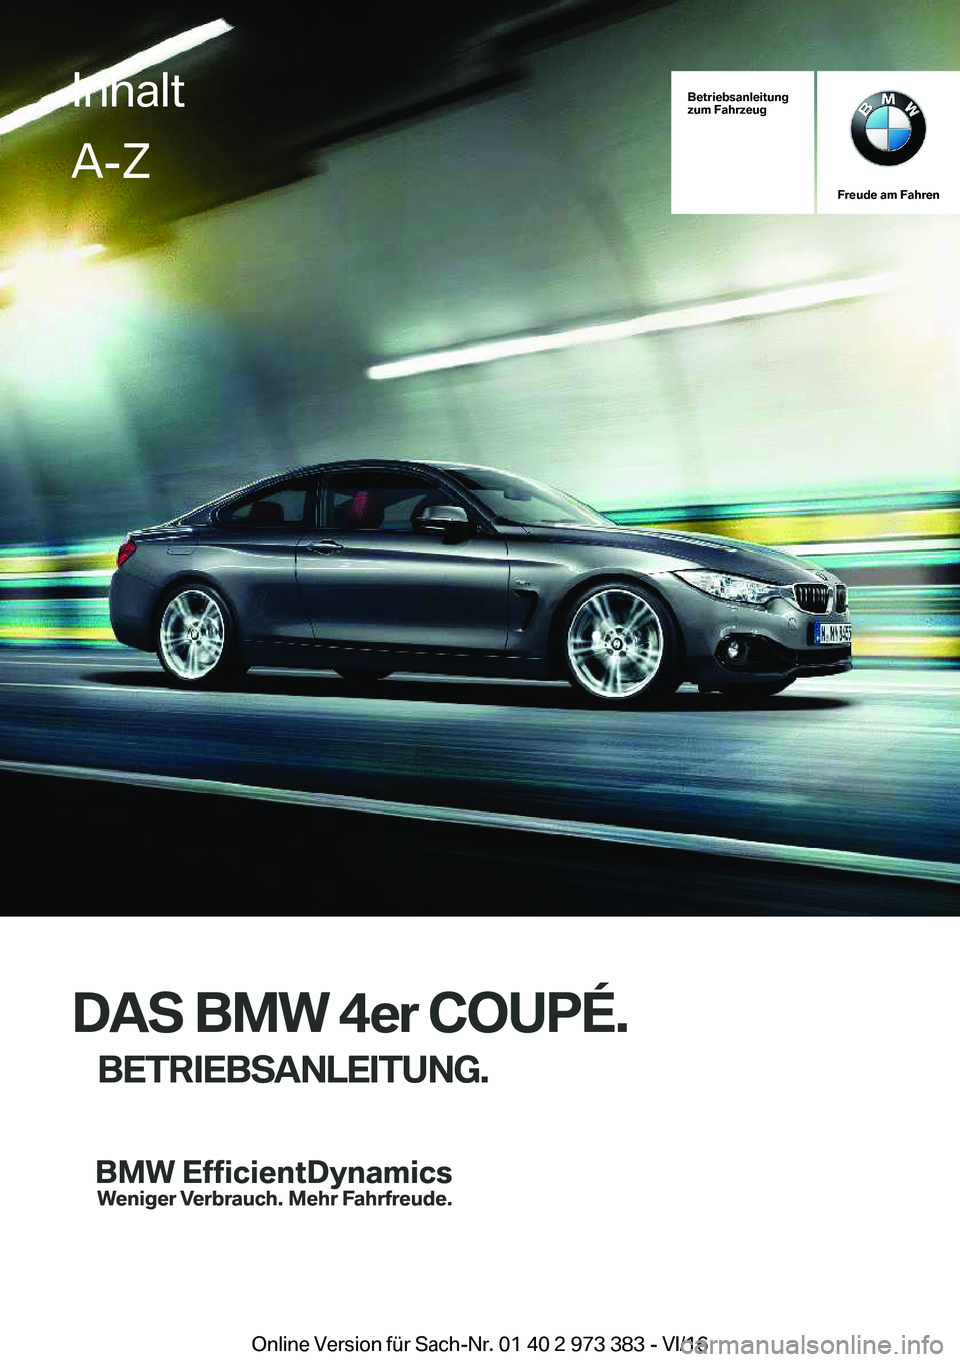 BMW 4 SERIES COUPE 2017  Betriebsanleitungen (in German) �B�e�t�r�i�e�b�s�a�n�l�e�i�t�u�n�g
�z�u�m��F�a�h�r�z�e�u�g
�F�r�e�u�d�e��a�m��F�a�h�r�e�n
�D�A�S��B�M�W��4�e�r��C�O�U�P�